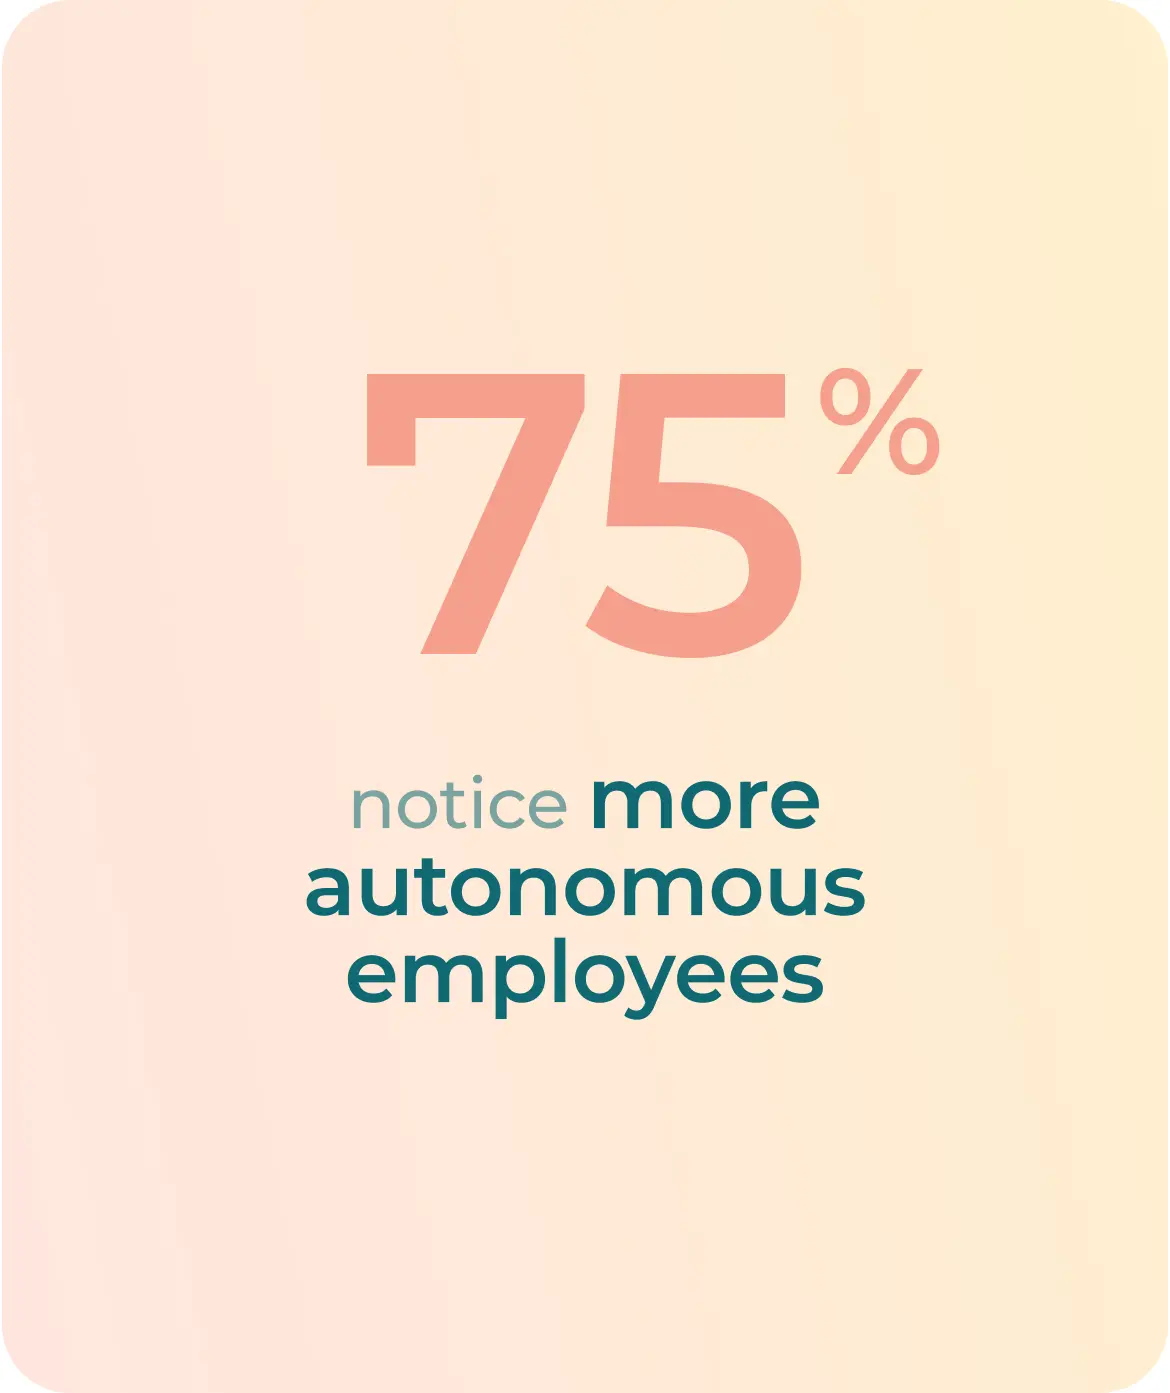 75% notice more autonomous employees